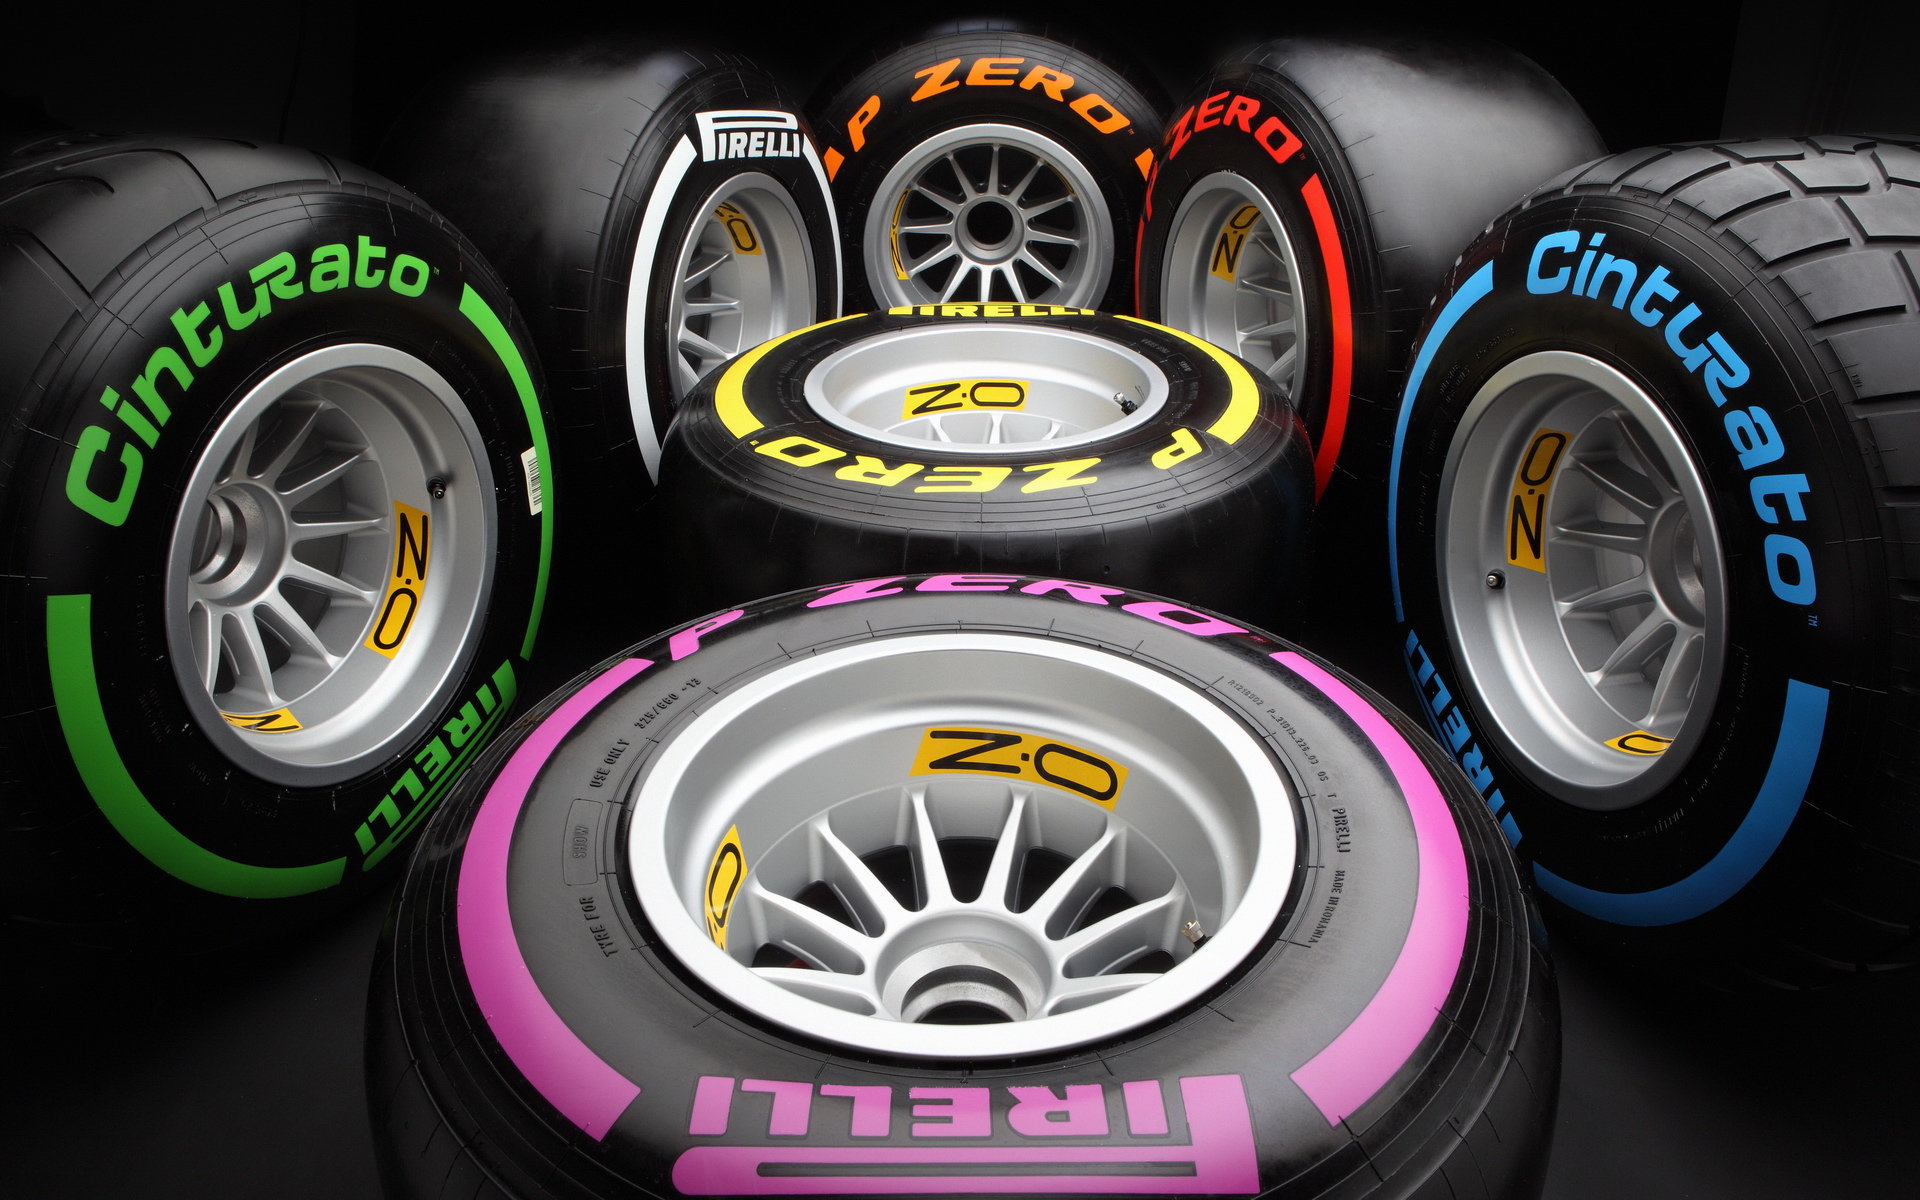 Pneumatiky Pirelli pro sezónu 2016 - novinkou je ultra-měkká směs